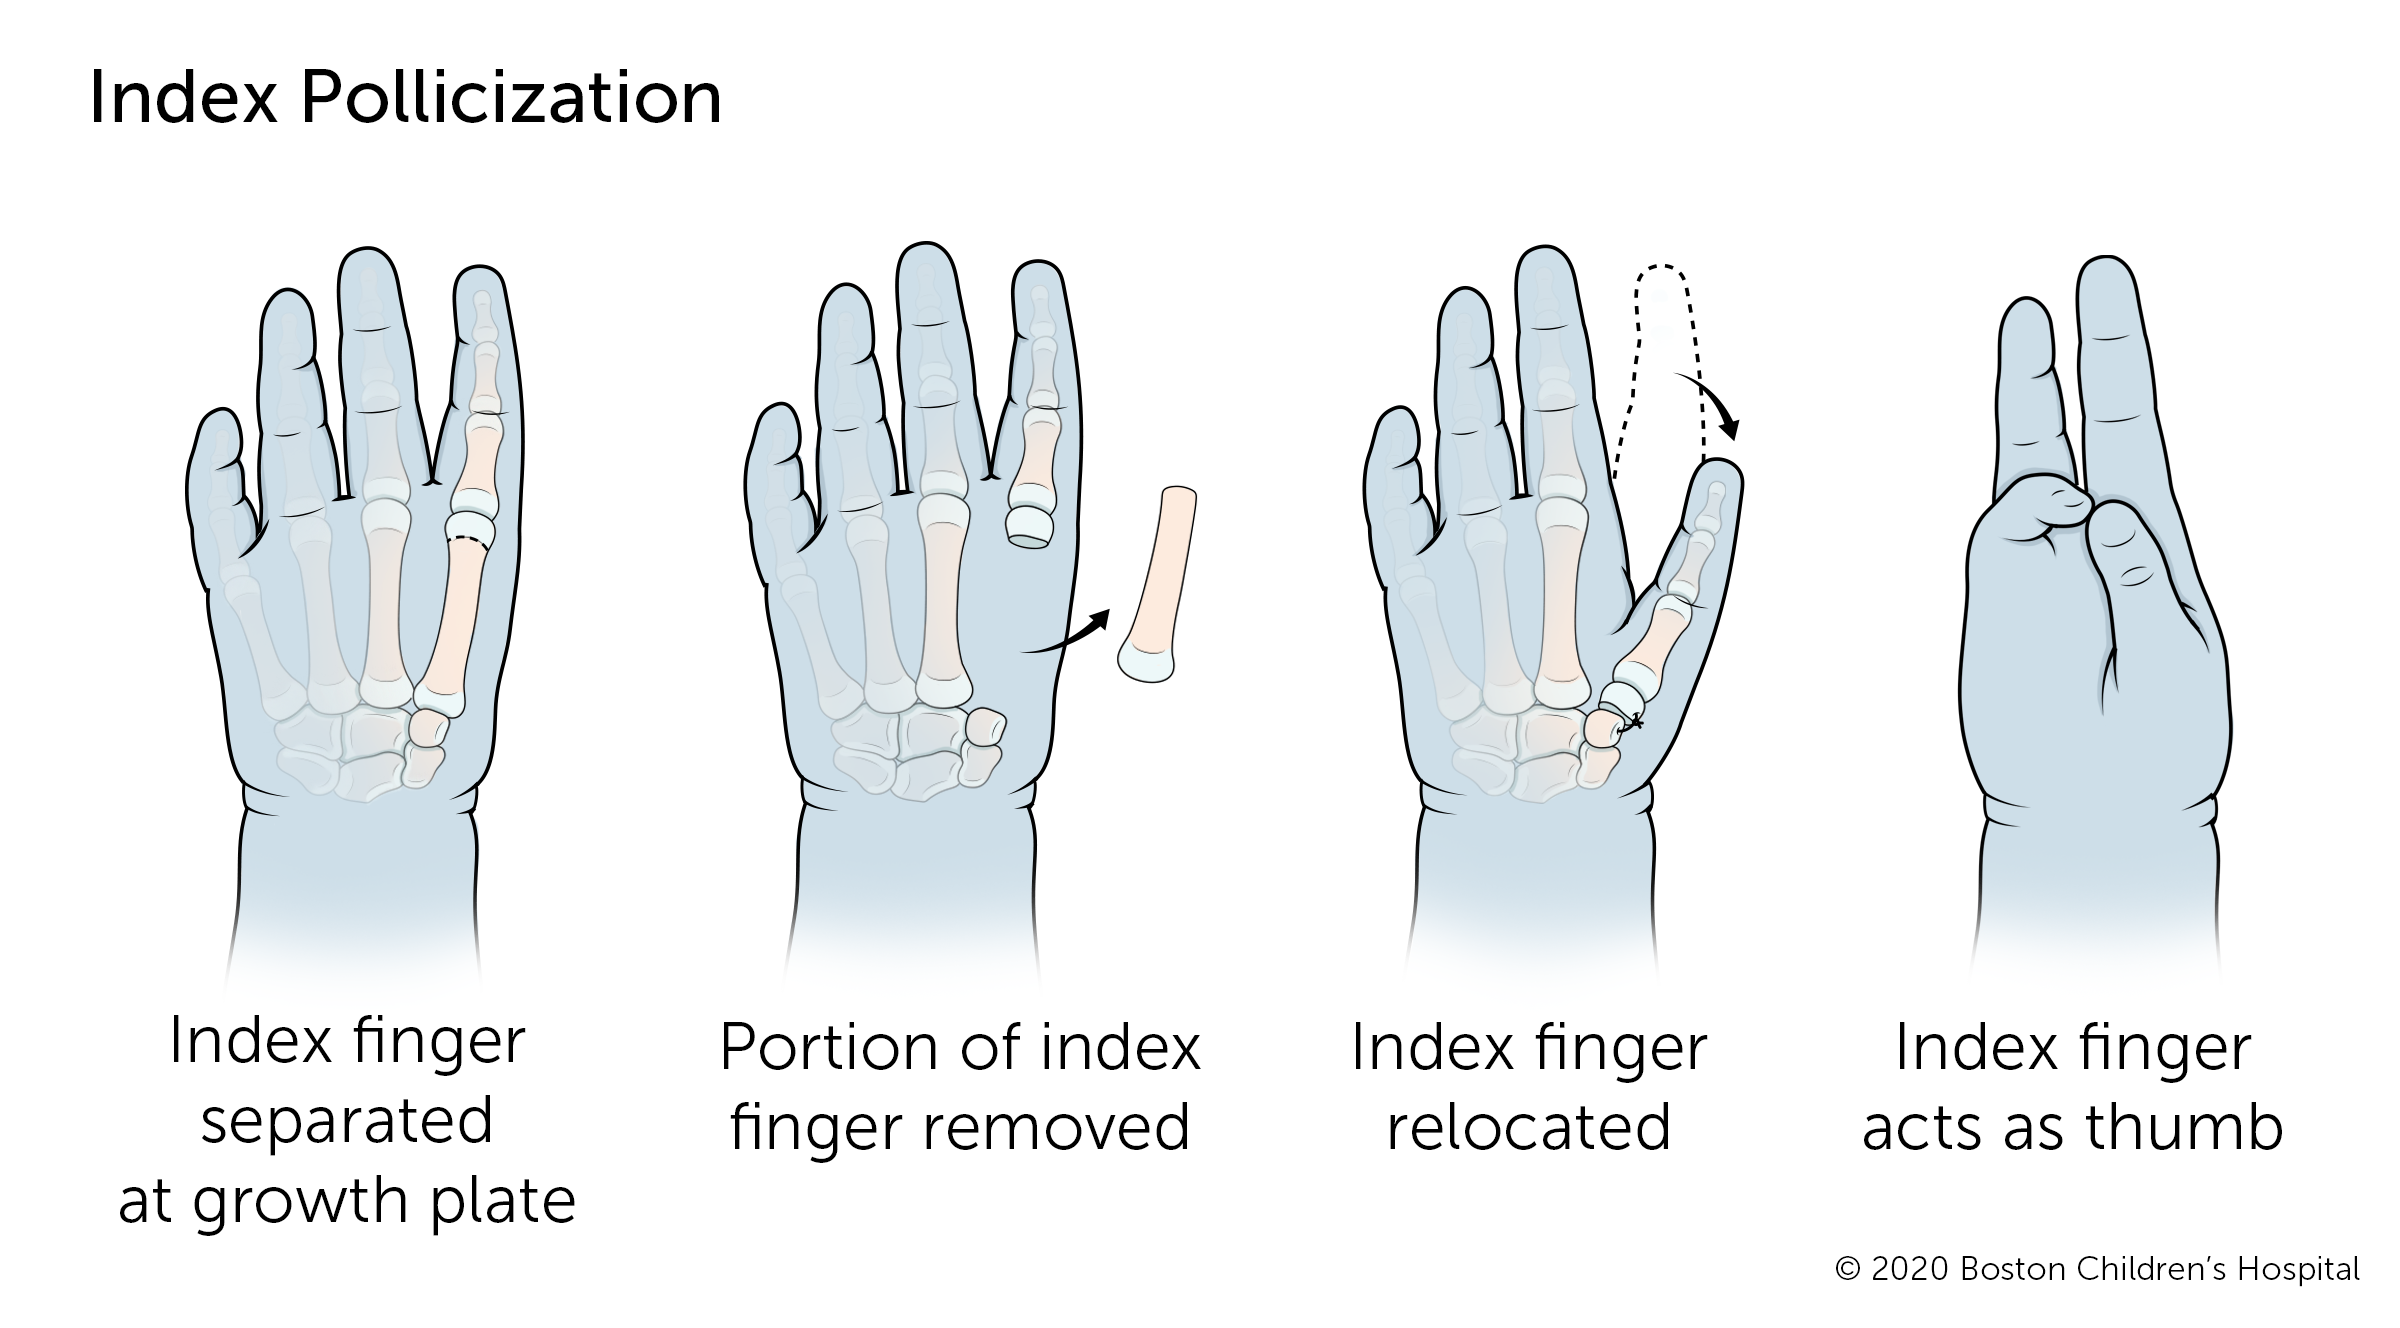 如果拇指完全失踪,指数pollicization手术将食指拇指的位置。食指在生长板分离,手指从手的一部分,剩下的手指重新安置,它可以作为一个经验法则。